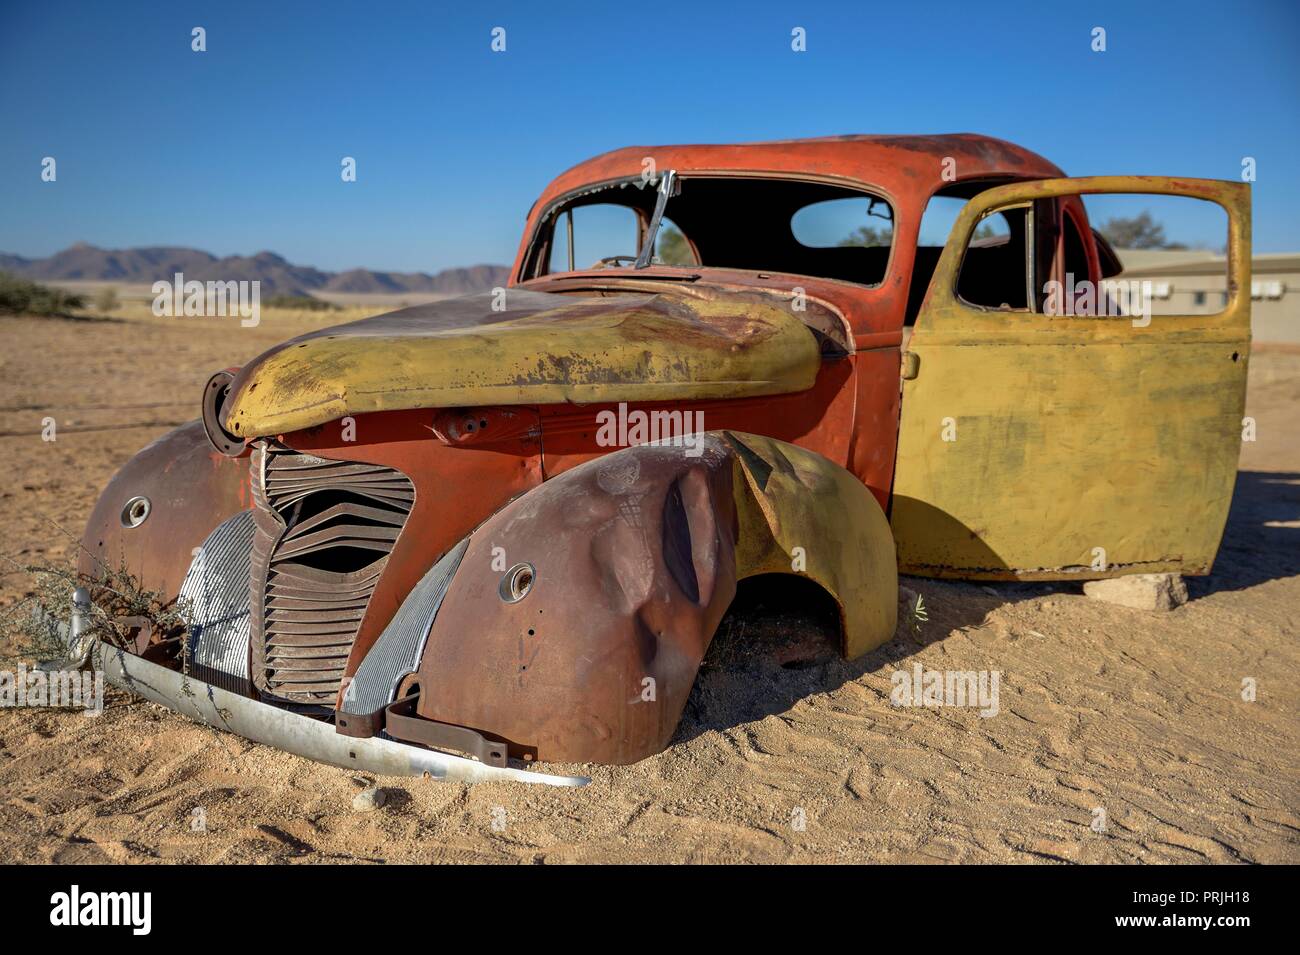 Oldtimer dans le sable, Solitaire, Khomas region, Namibie Banque D'Images